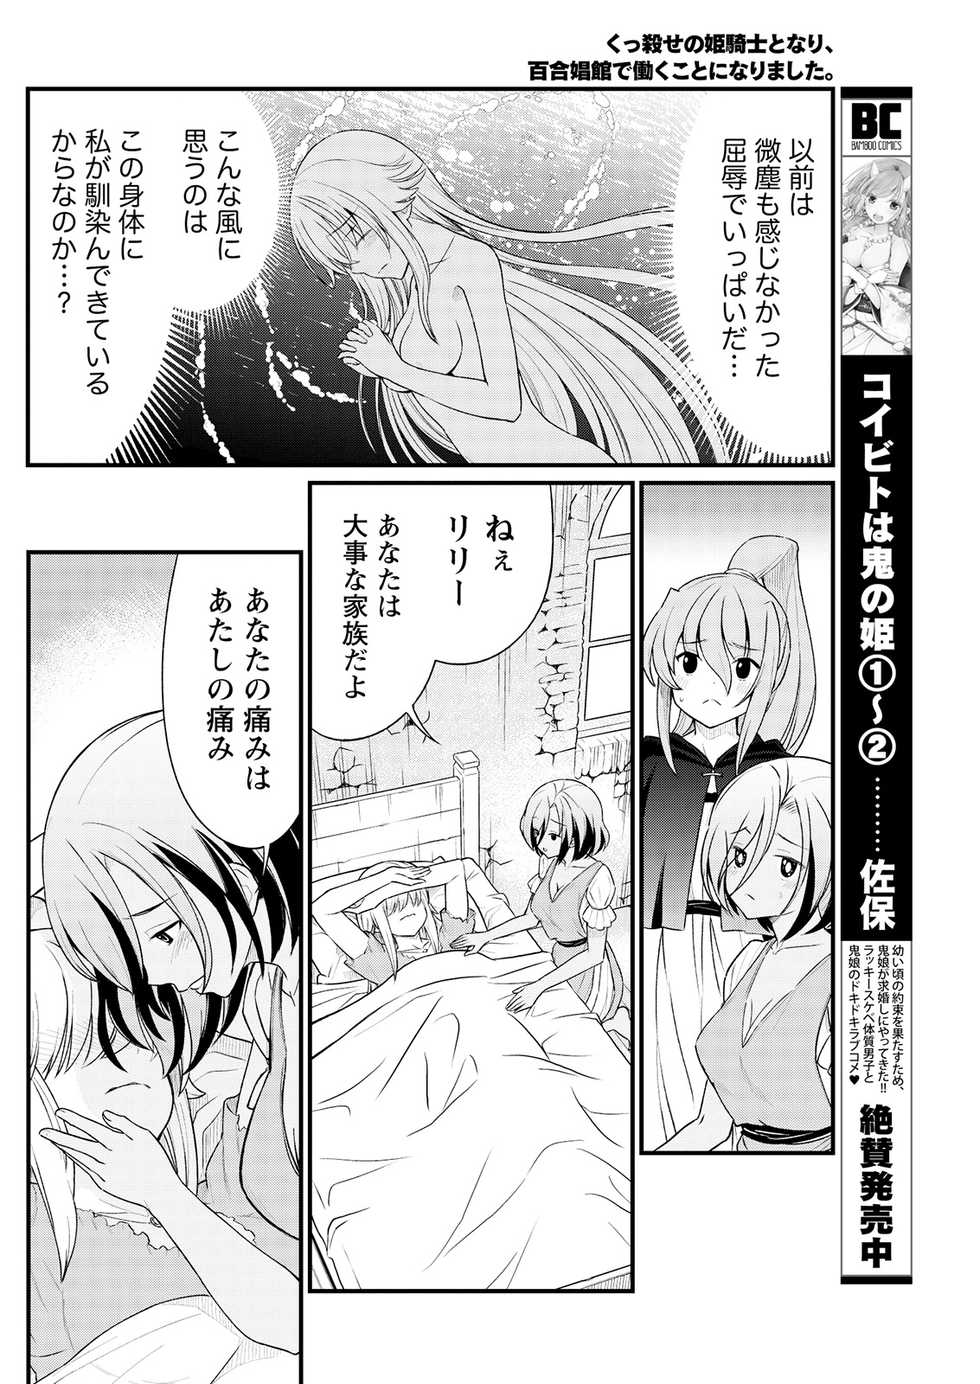 [Hinaki] Kukkorose no Himekishi to nari, Yuri Shoukan de Hataraku koto ni Narimashita. 9 - Page 12